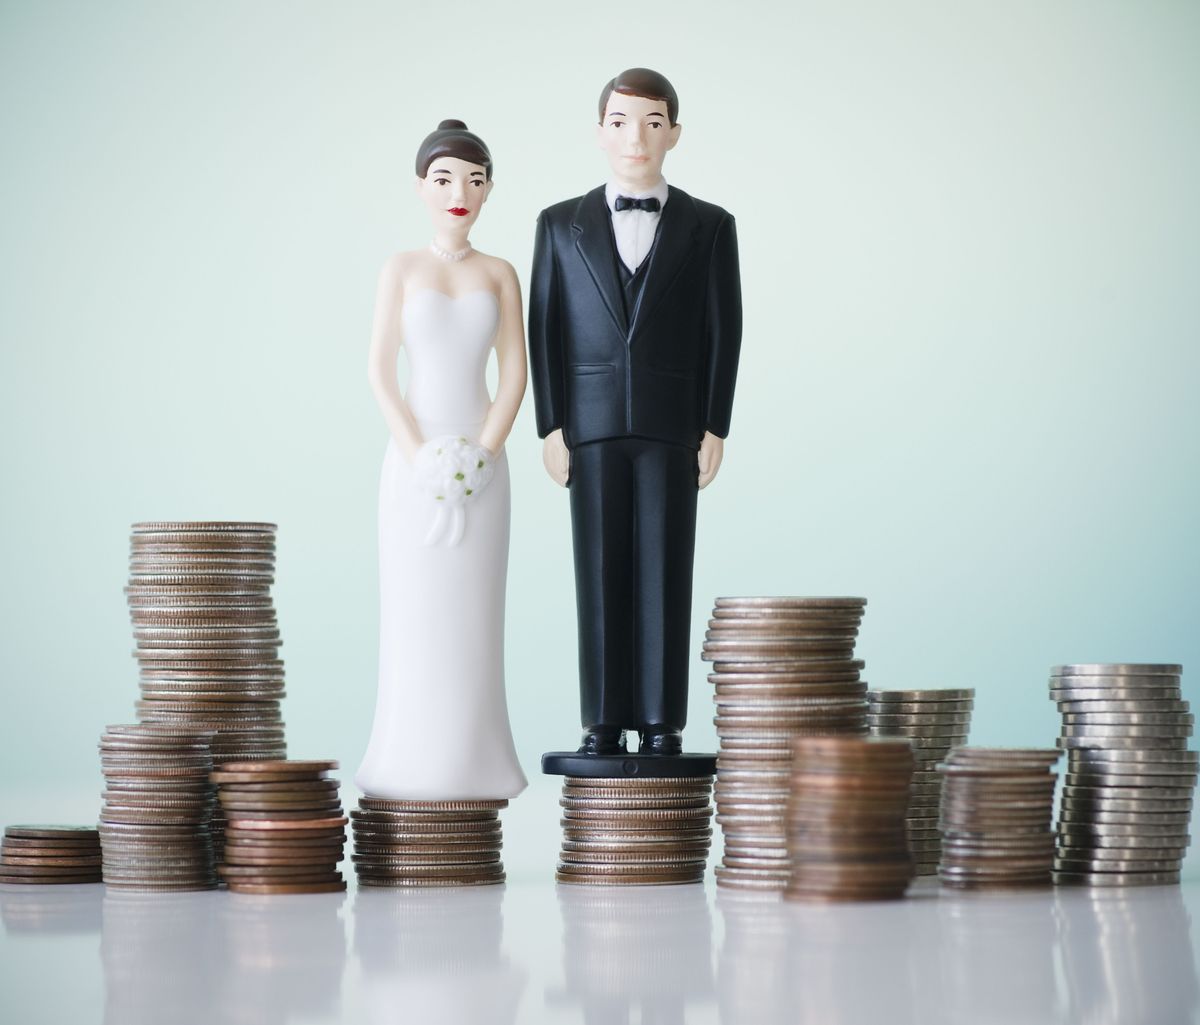 Qui paie quoi lors d'un mariage?